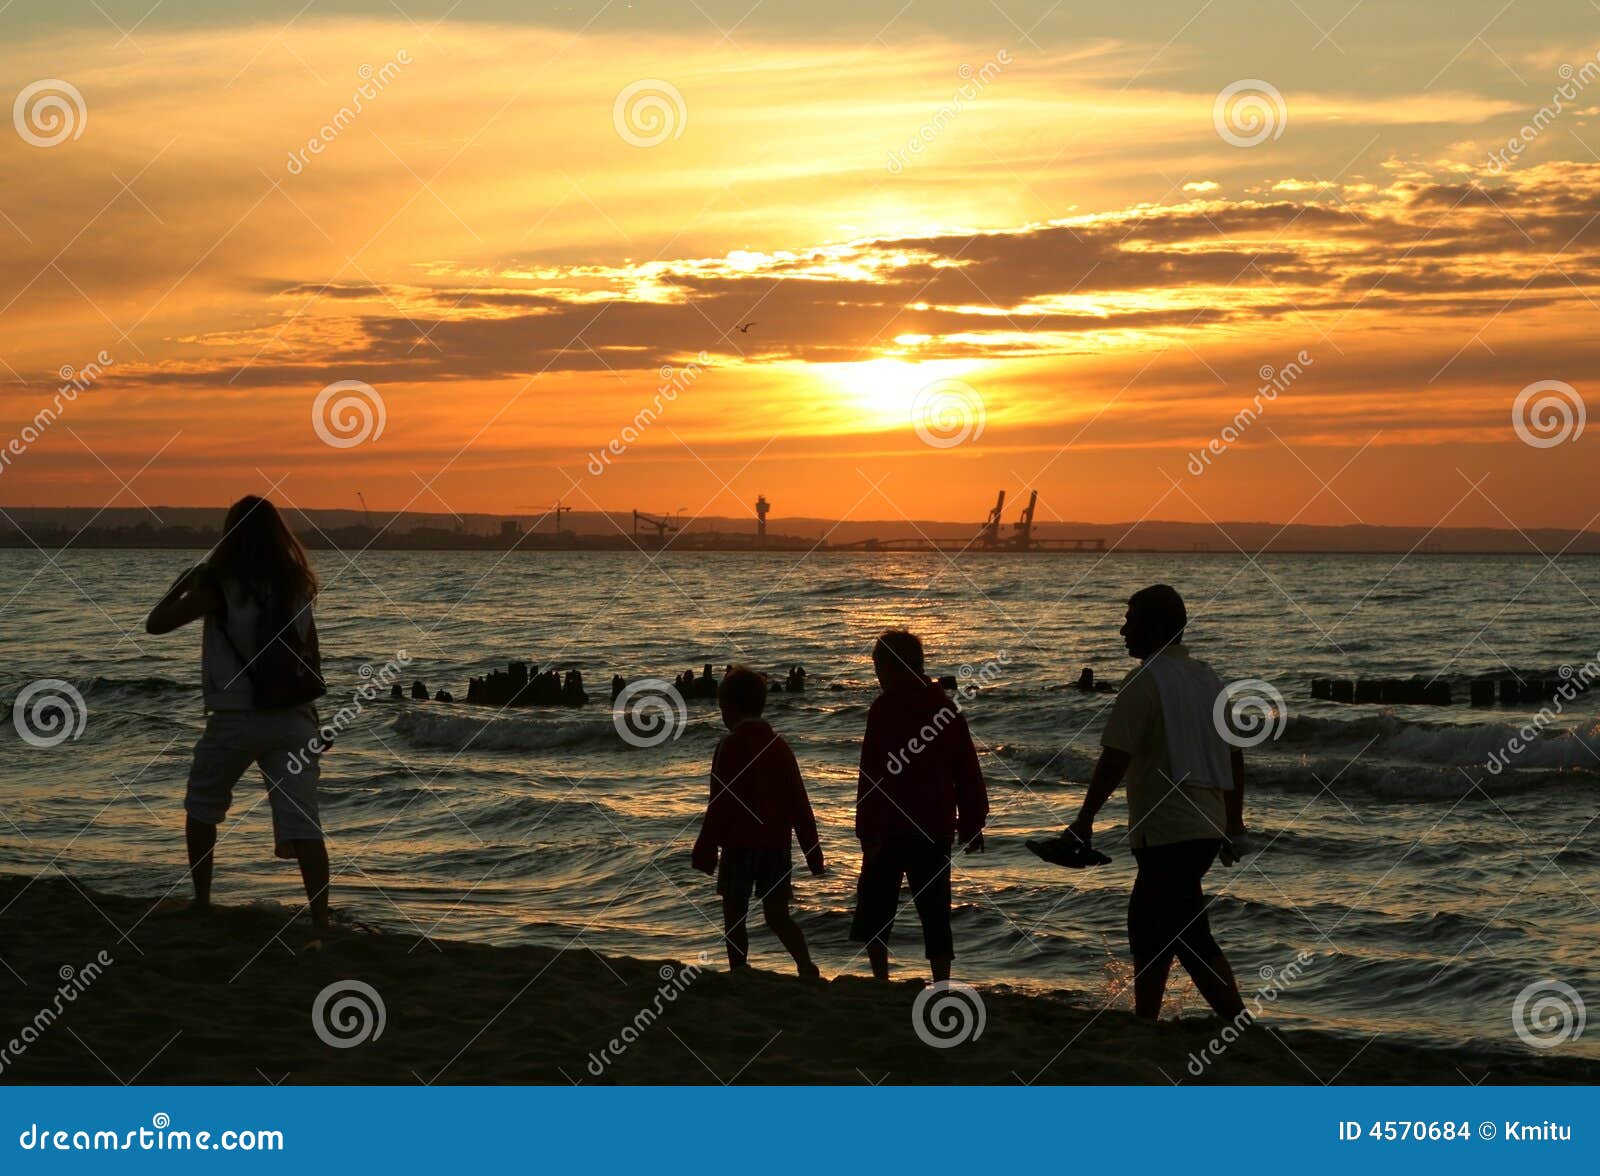 family sunset stroll